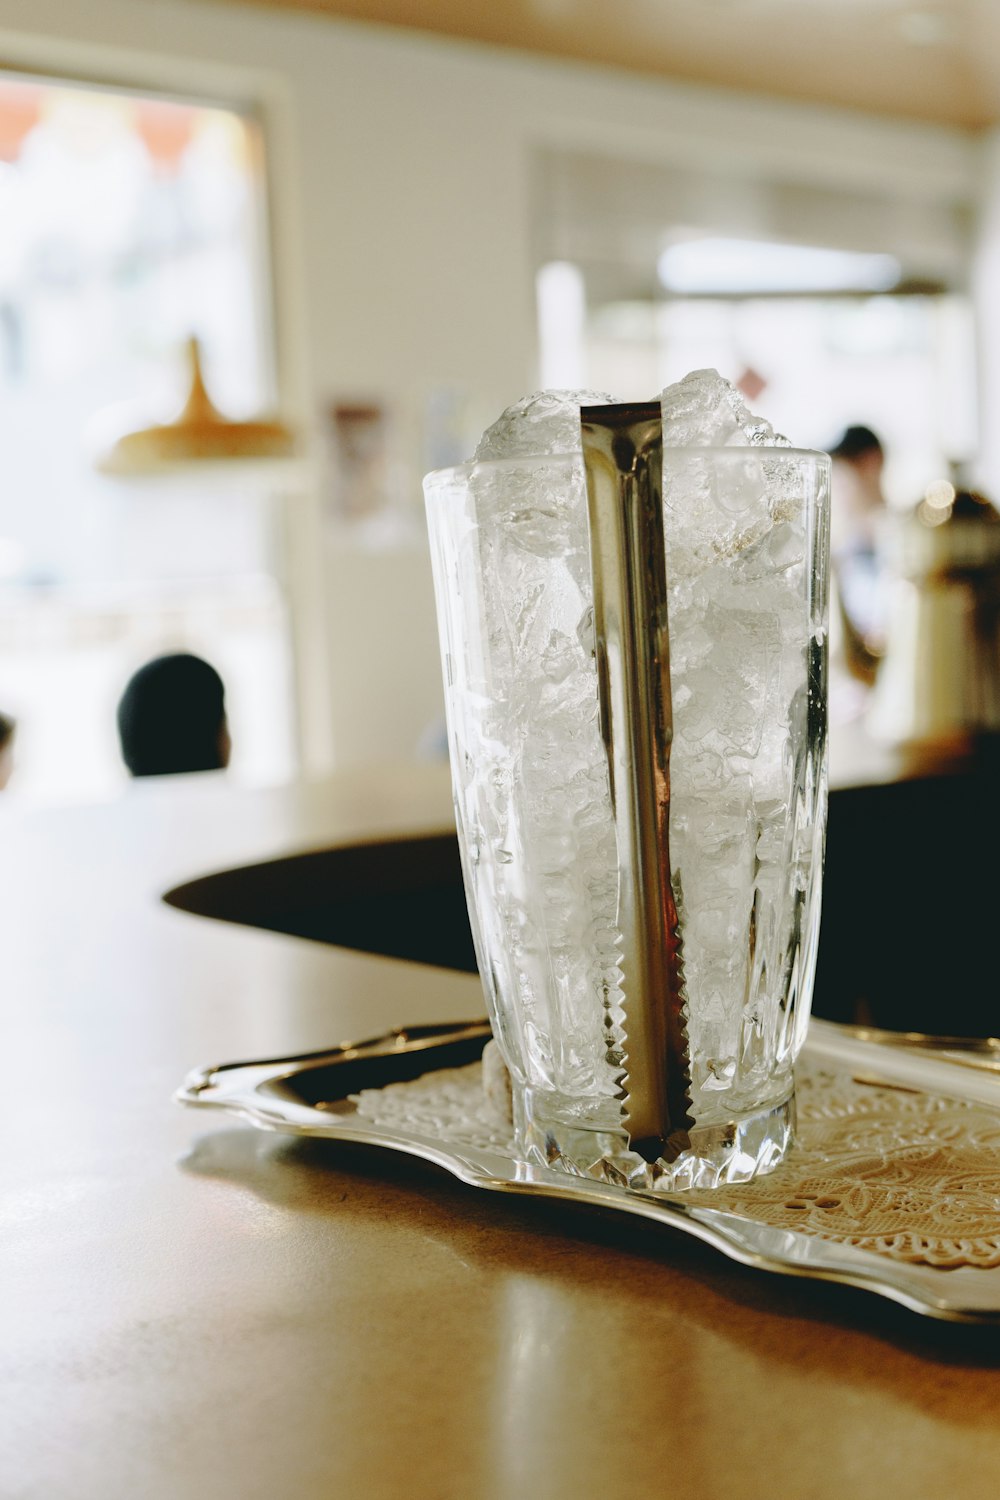 얼음과 얼음 집게로 채워진 투명한 음료수 잔